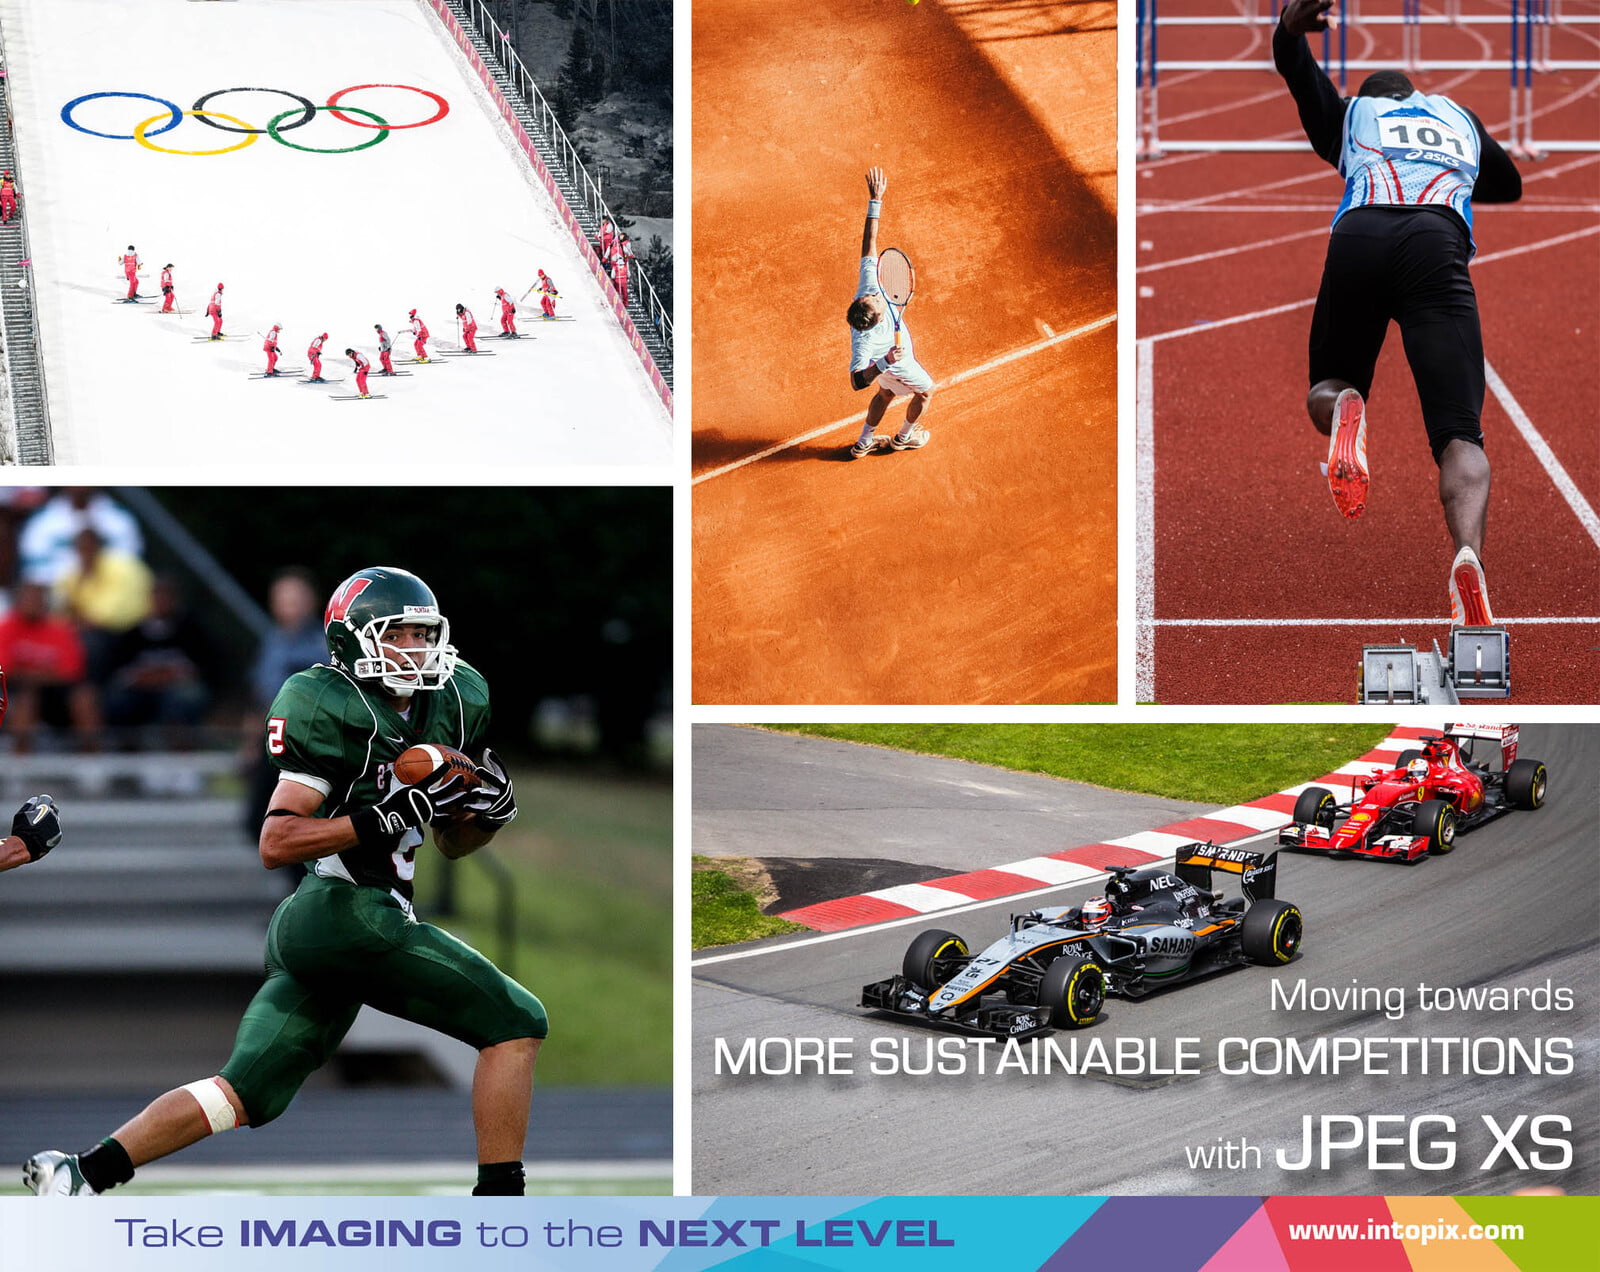 通过使用JPEG XS进行远程制作，使体育比赛更加可持续。